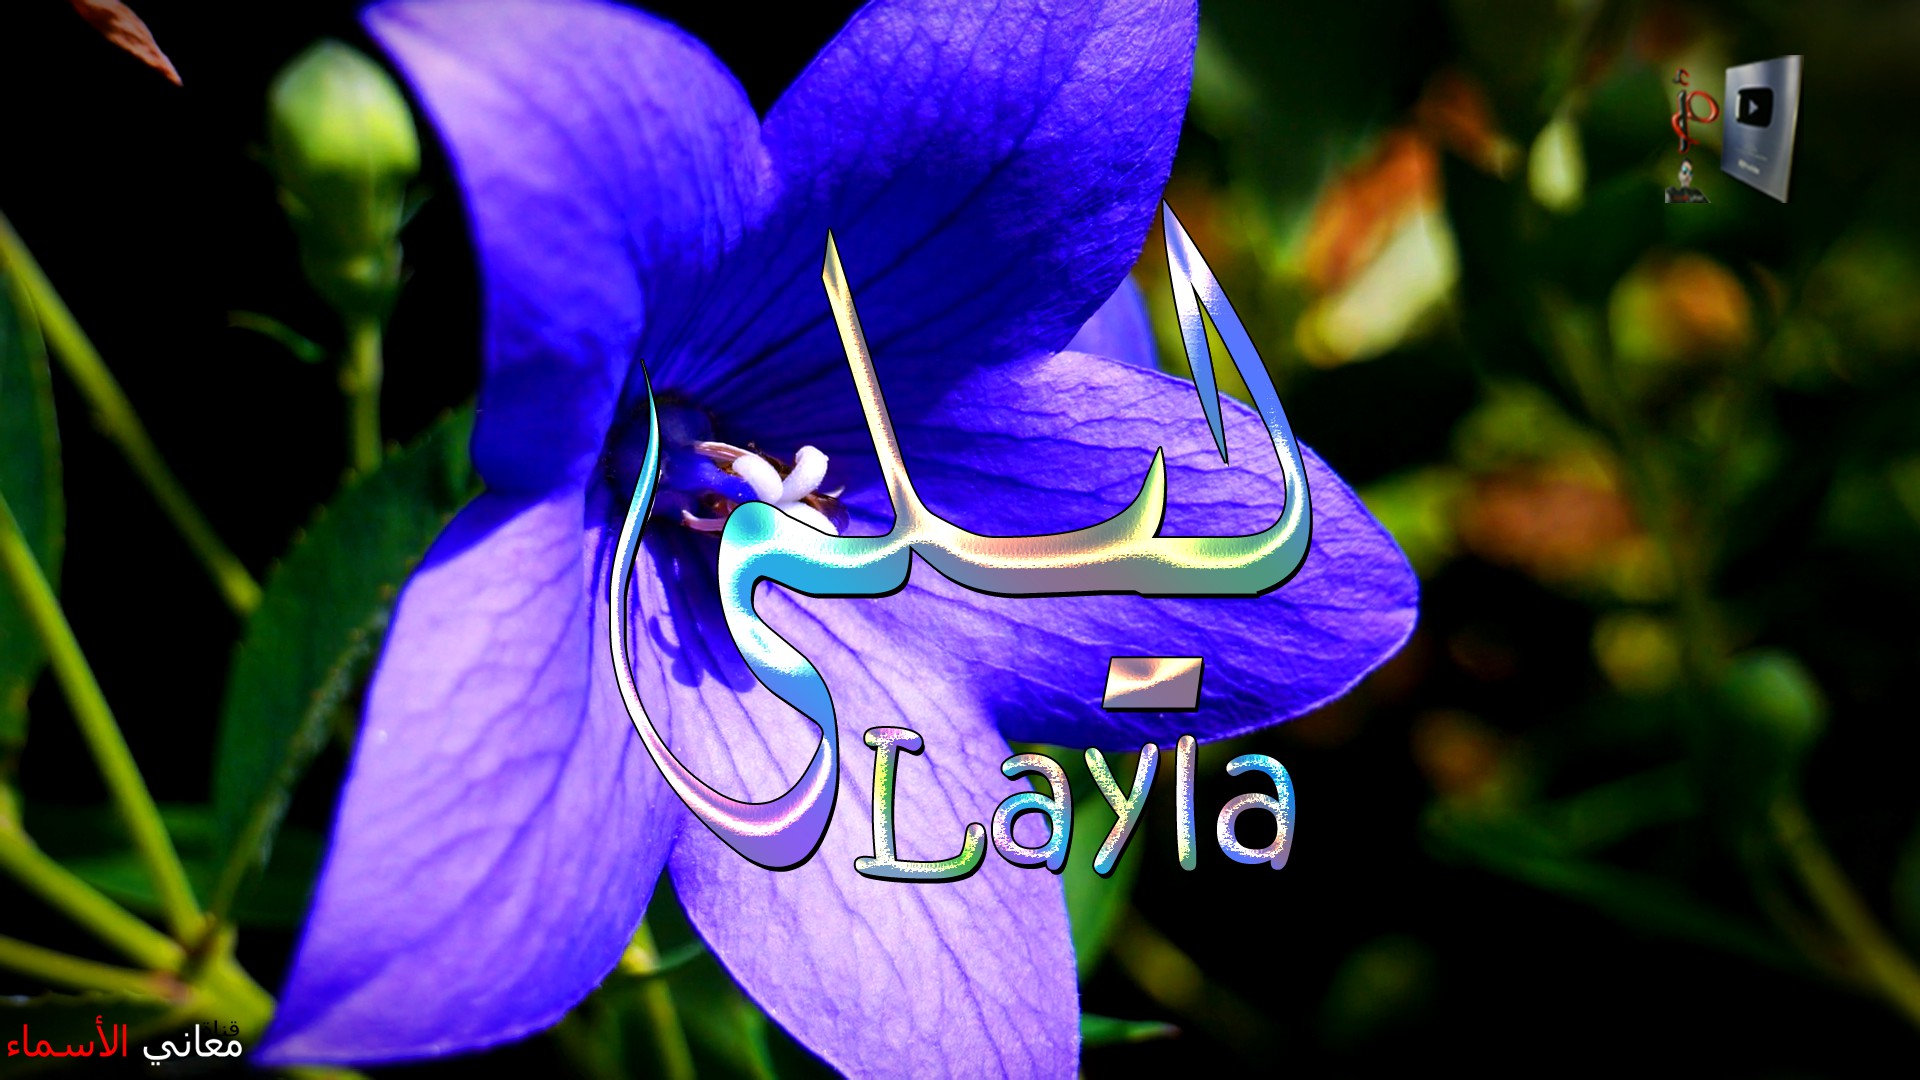 معنى اسم, ليلى, وصفات, حاملة, هذا الاسم, Layla,